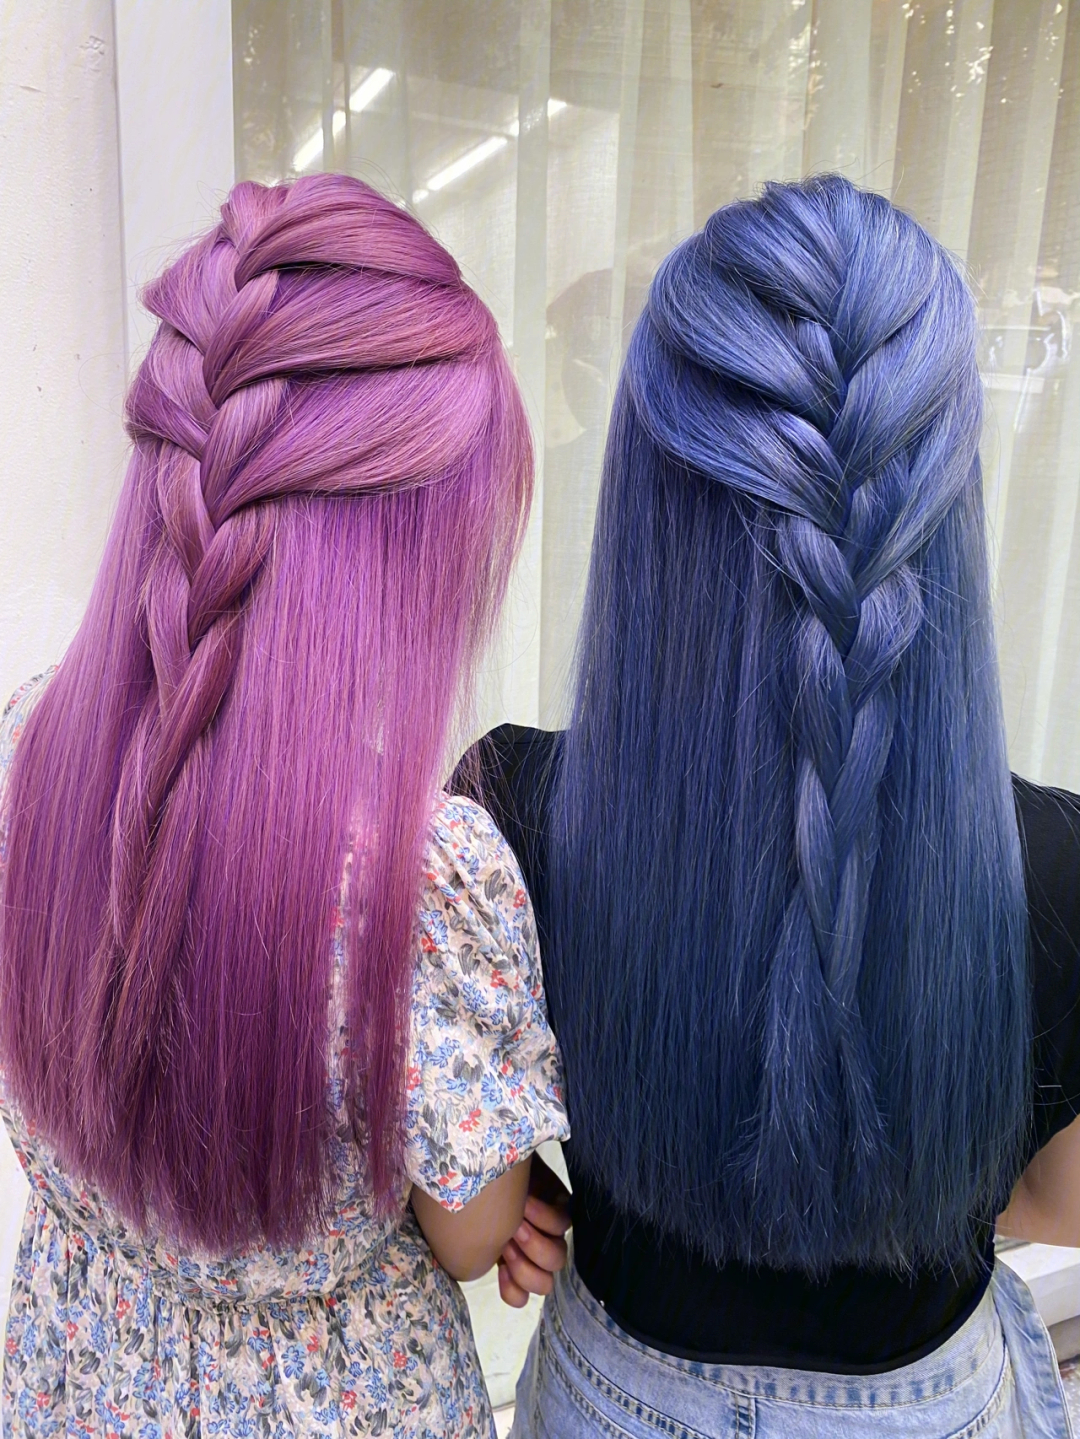 薄藤紫湖蓝色彩色头发真的很酷很仙